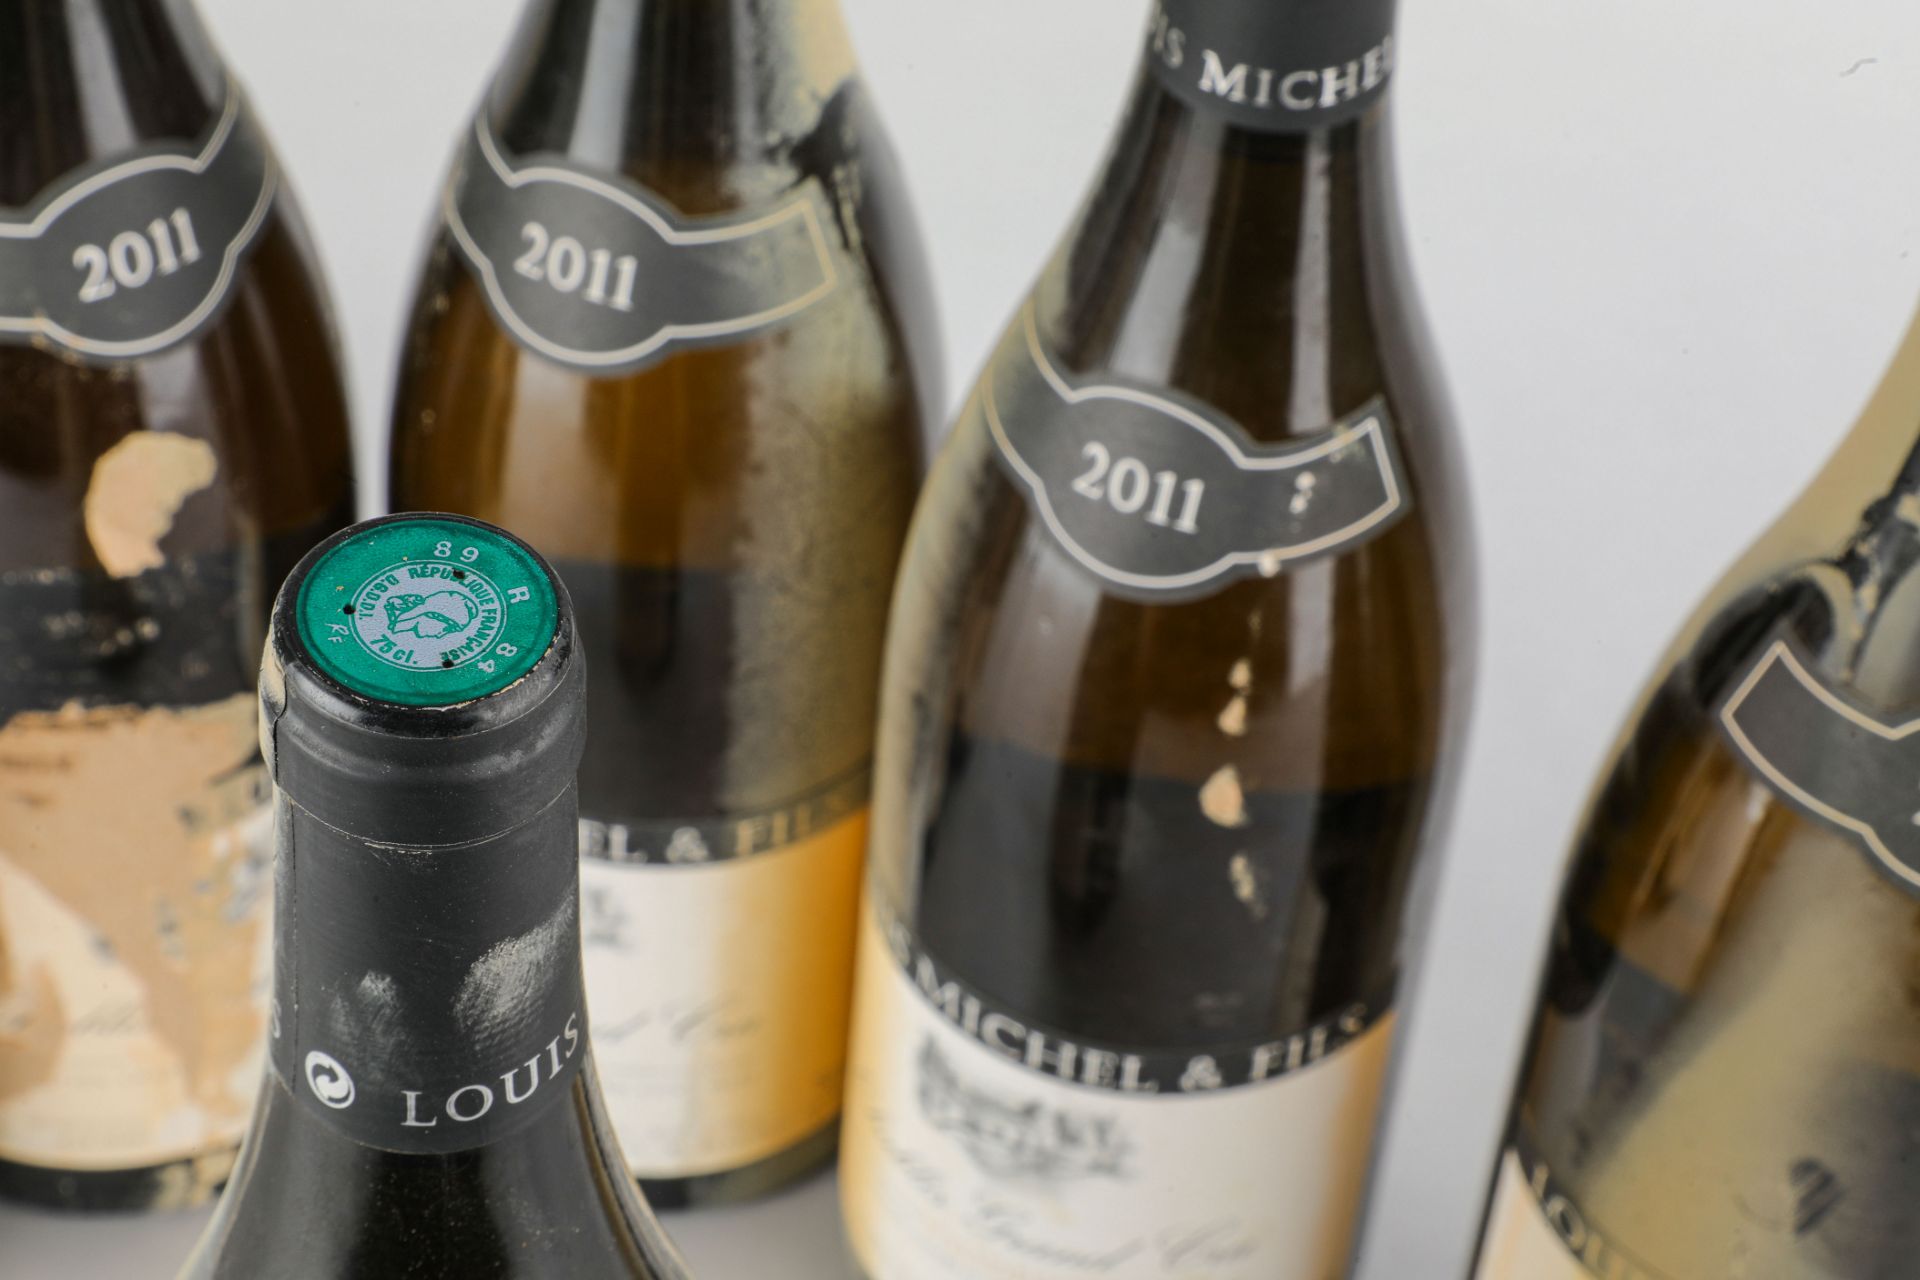 CHABLIS Grand Cru. 2011. 6 bouteilles. Vaudésir. Louis Michel et Fils. - Image 5 of 5